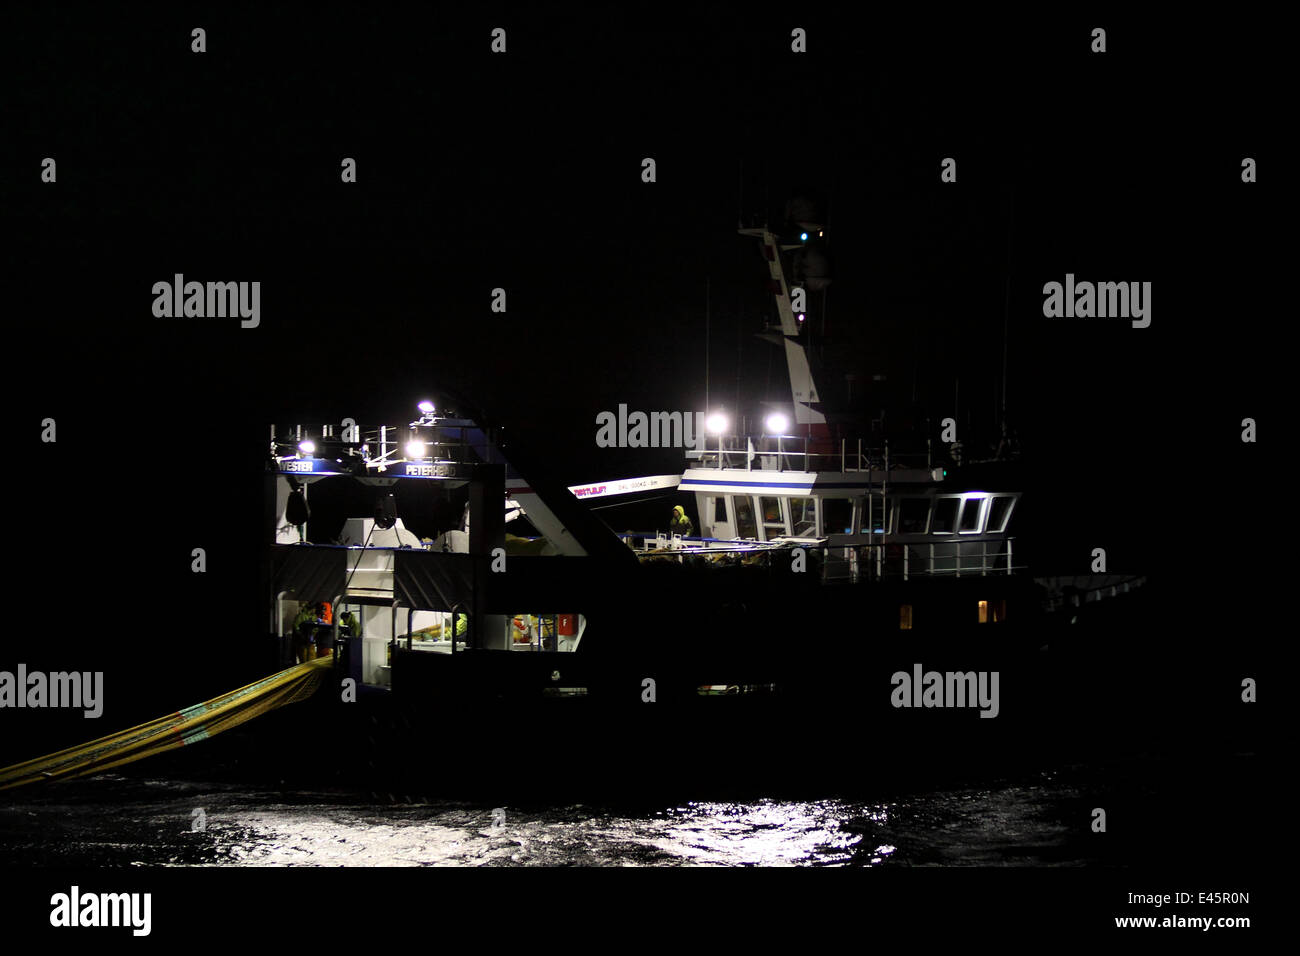 Fanggeräte Schiff Harvester schleppen Angeln im dunklen Mai 2010. Eigentum freigegeben. Stockfoto